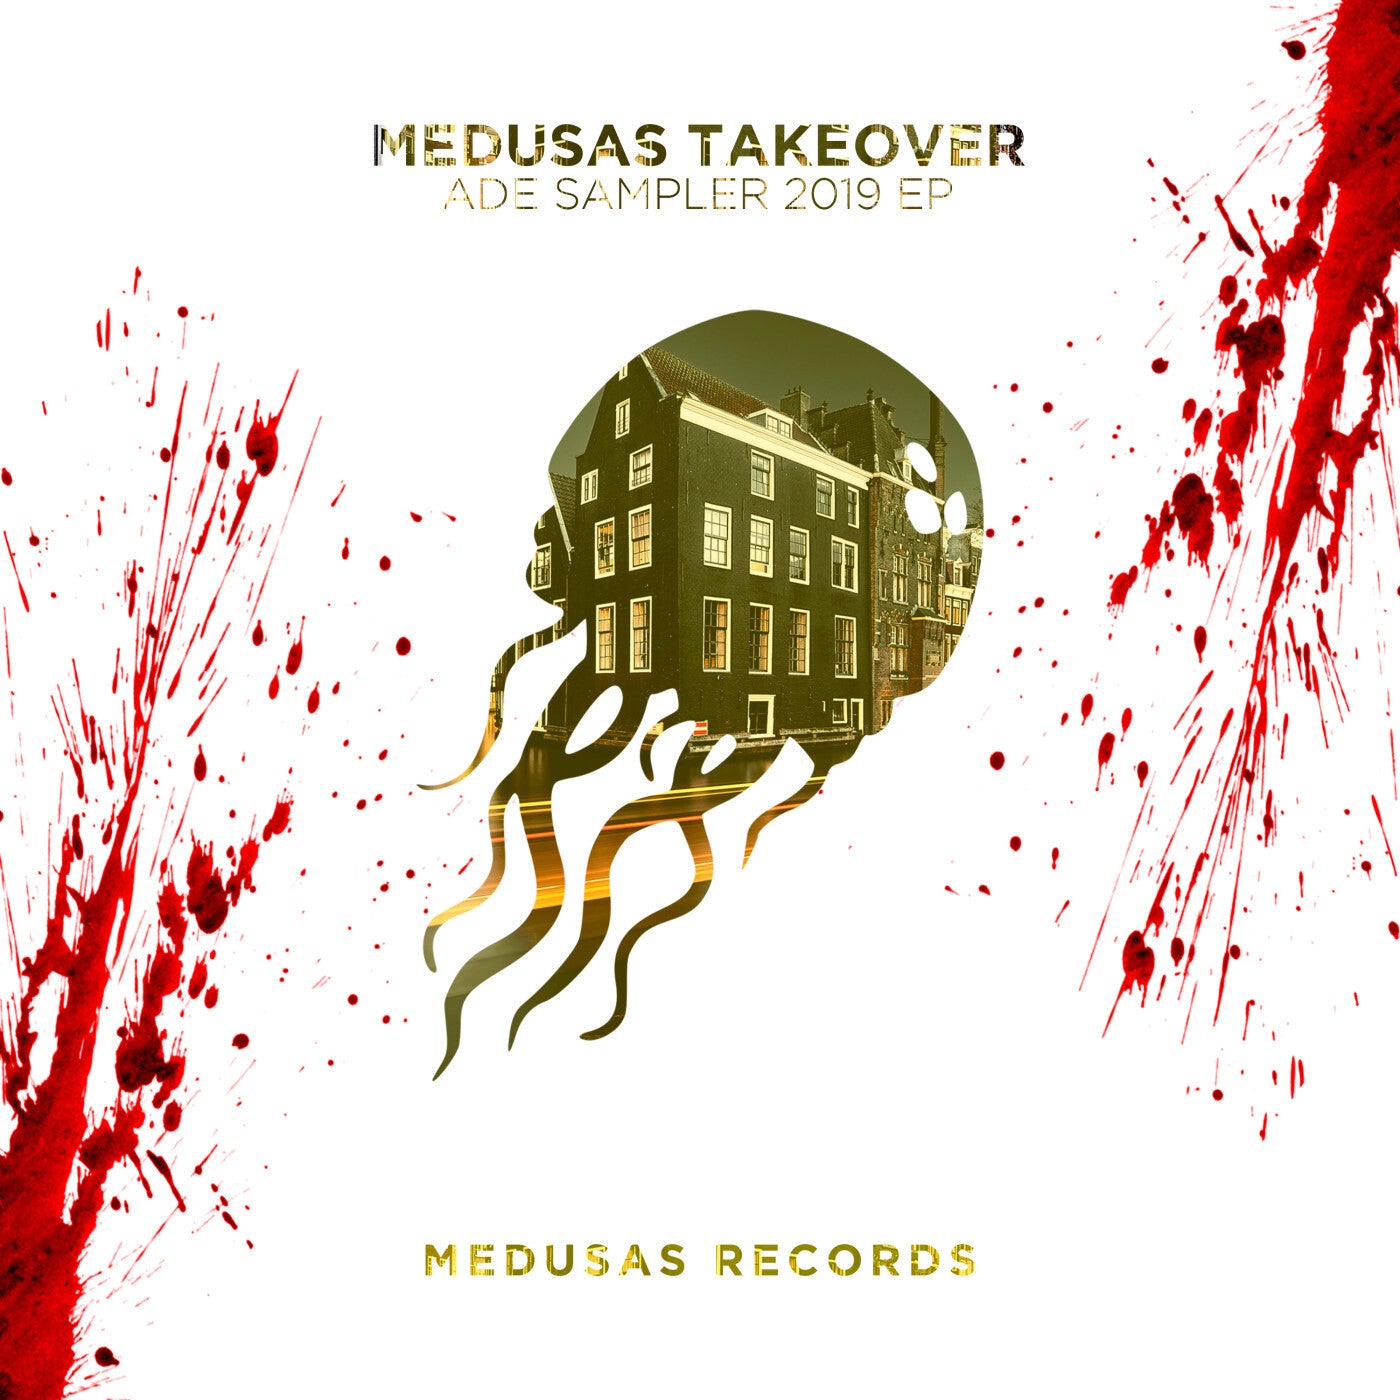 Medusas Takeover ADE Sampler 2019 EP